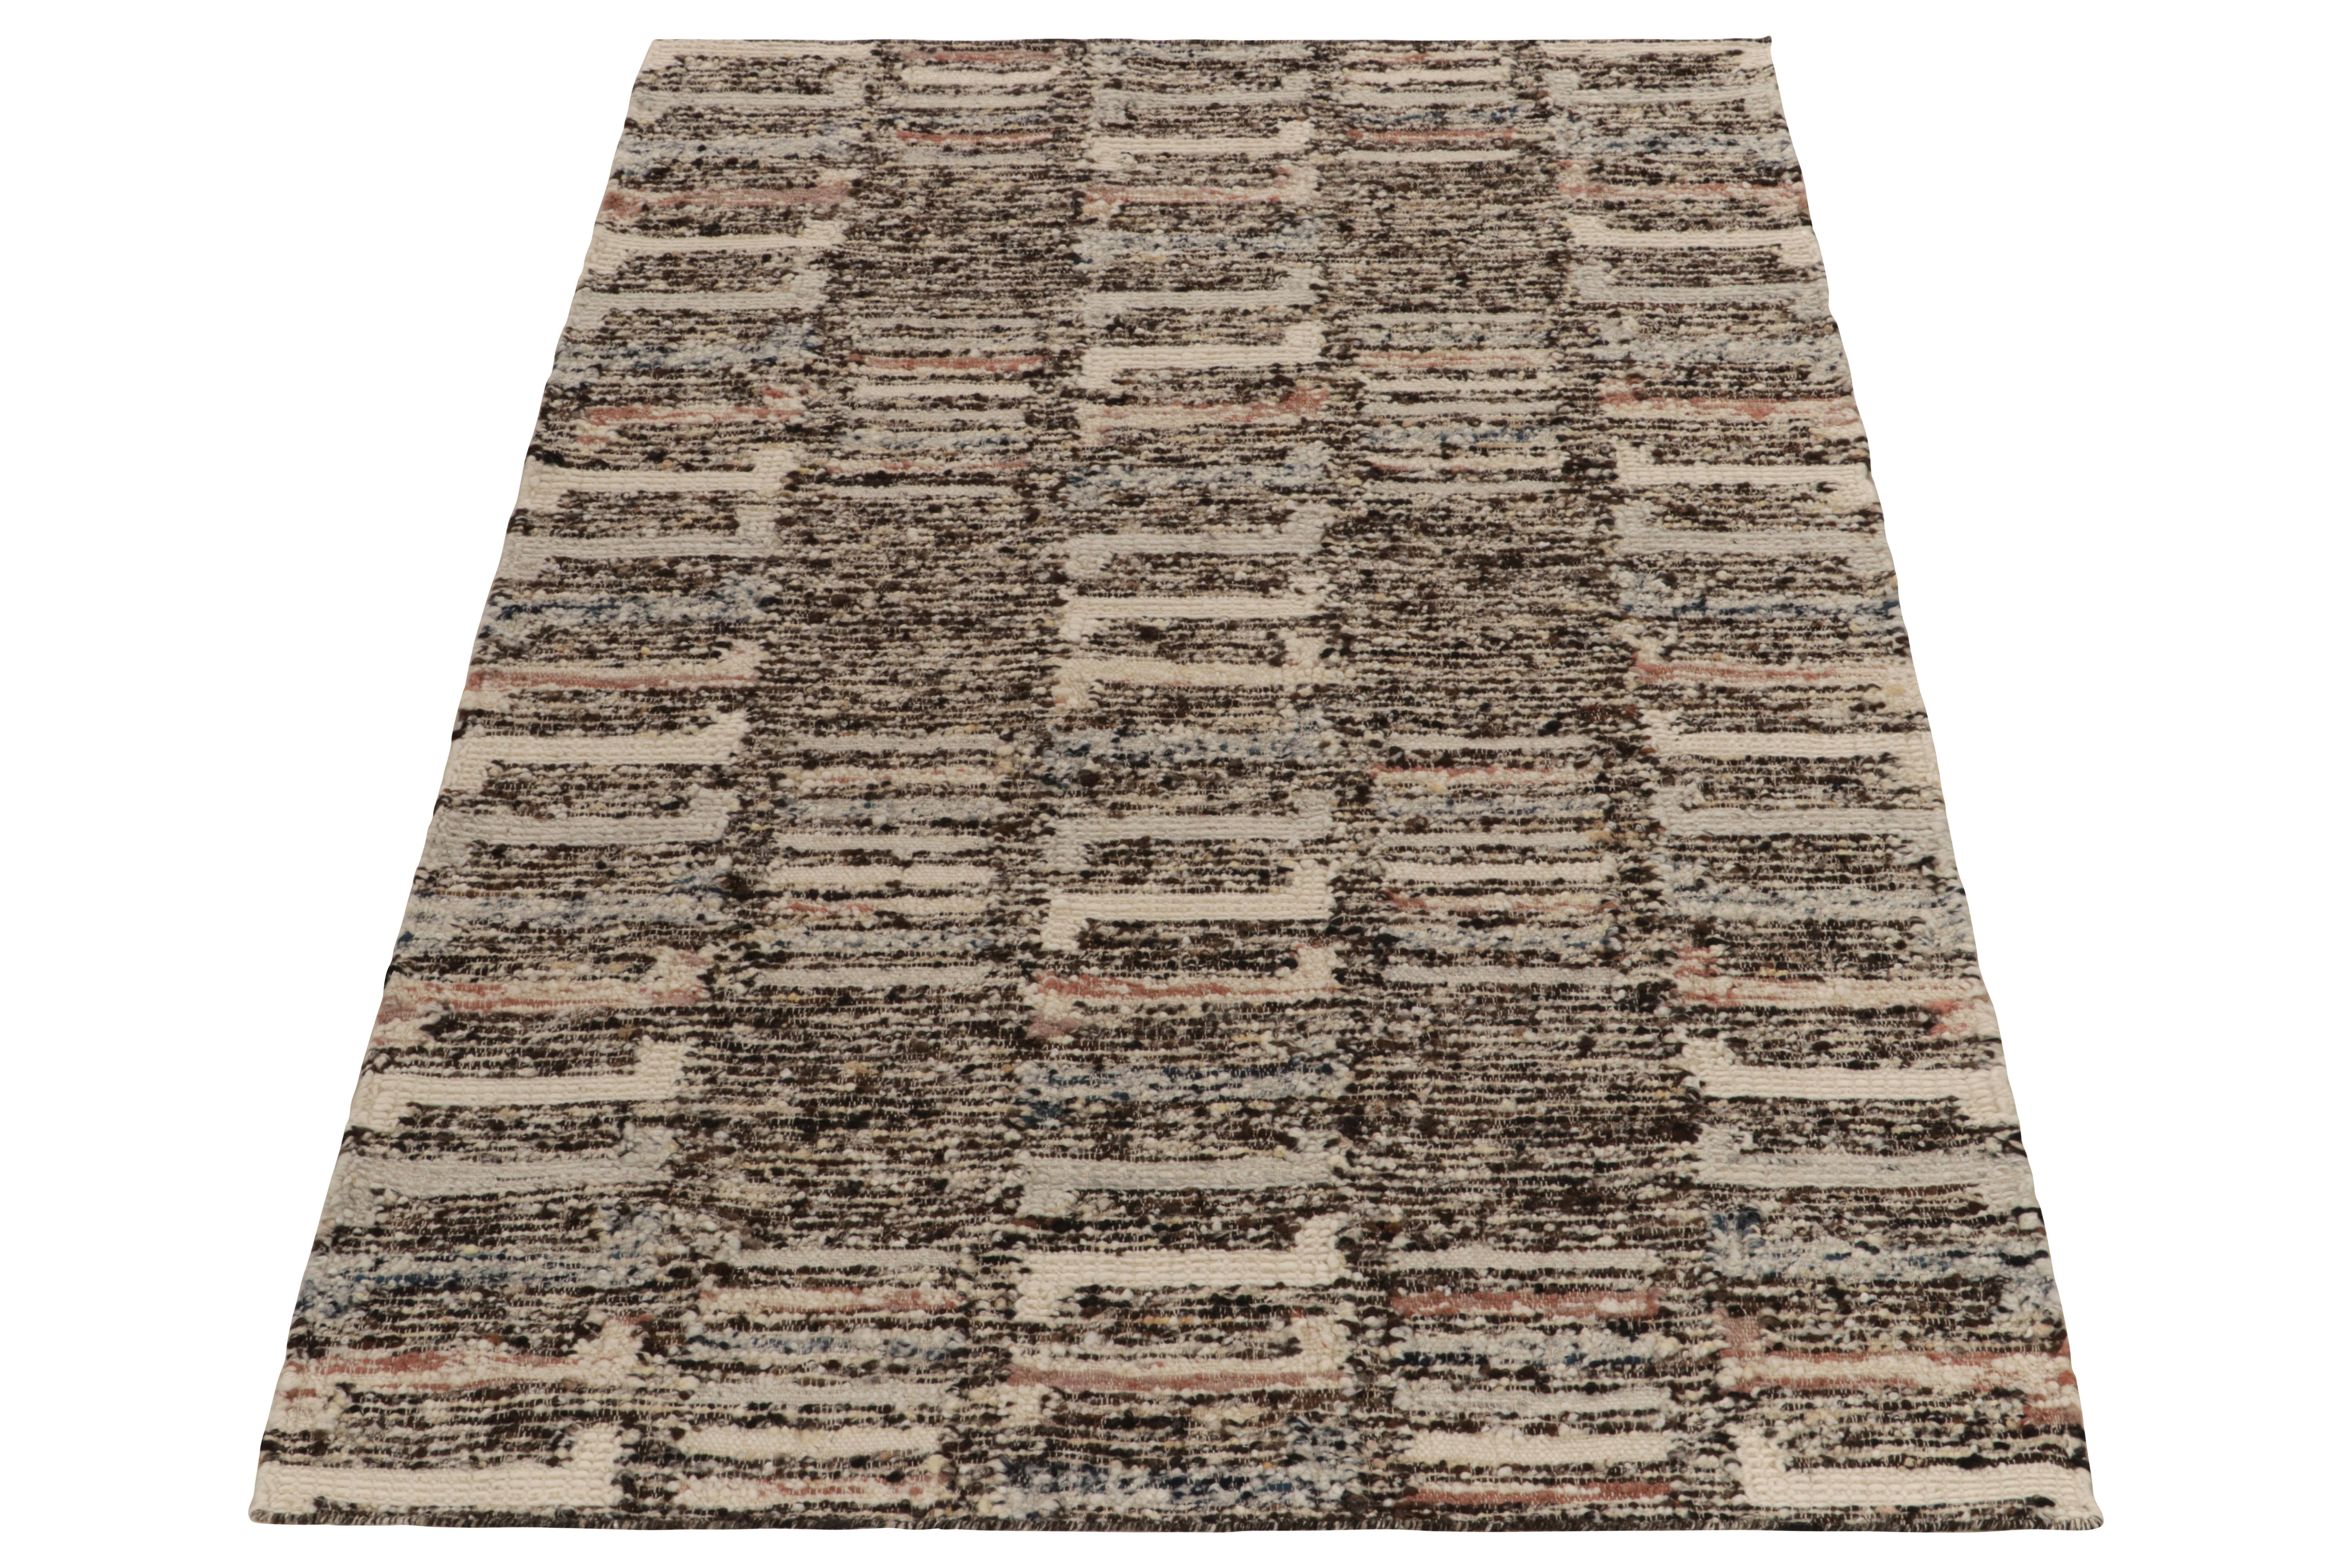 Rug & Kilim enthüllt seine Innovation in Stil und Technik mit diesem flach gewebten Teppich 5x8, der eine kühne Verbindung von polychromen Farben und Mustern erforscht. Der Kelim erfreut sich eines modernen geometrischen Musters in Karottenrot,